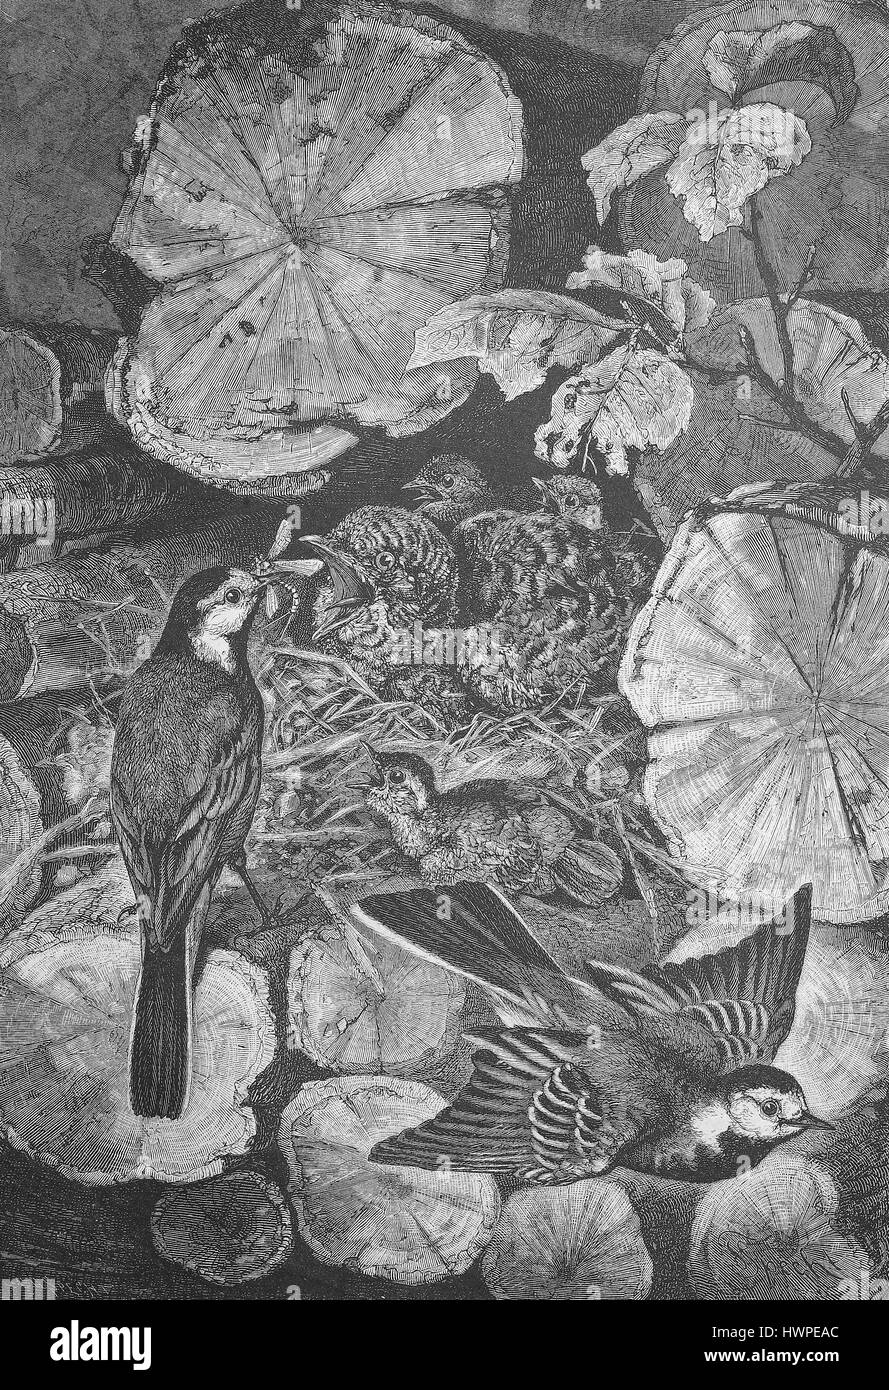 Junge Kuckuck im Nest eine Bachstelze, Kuckuck, Cuculus Canorus, Bachstelze, Motacilla Alba, Reproduktion einer original Holzschnitt aus dem Jahr 1882, digital verbessert Stockfoto